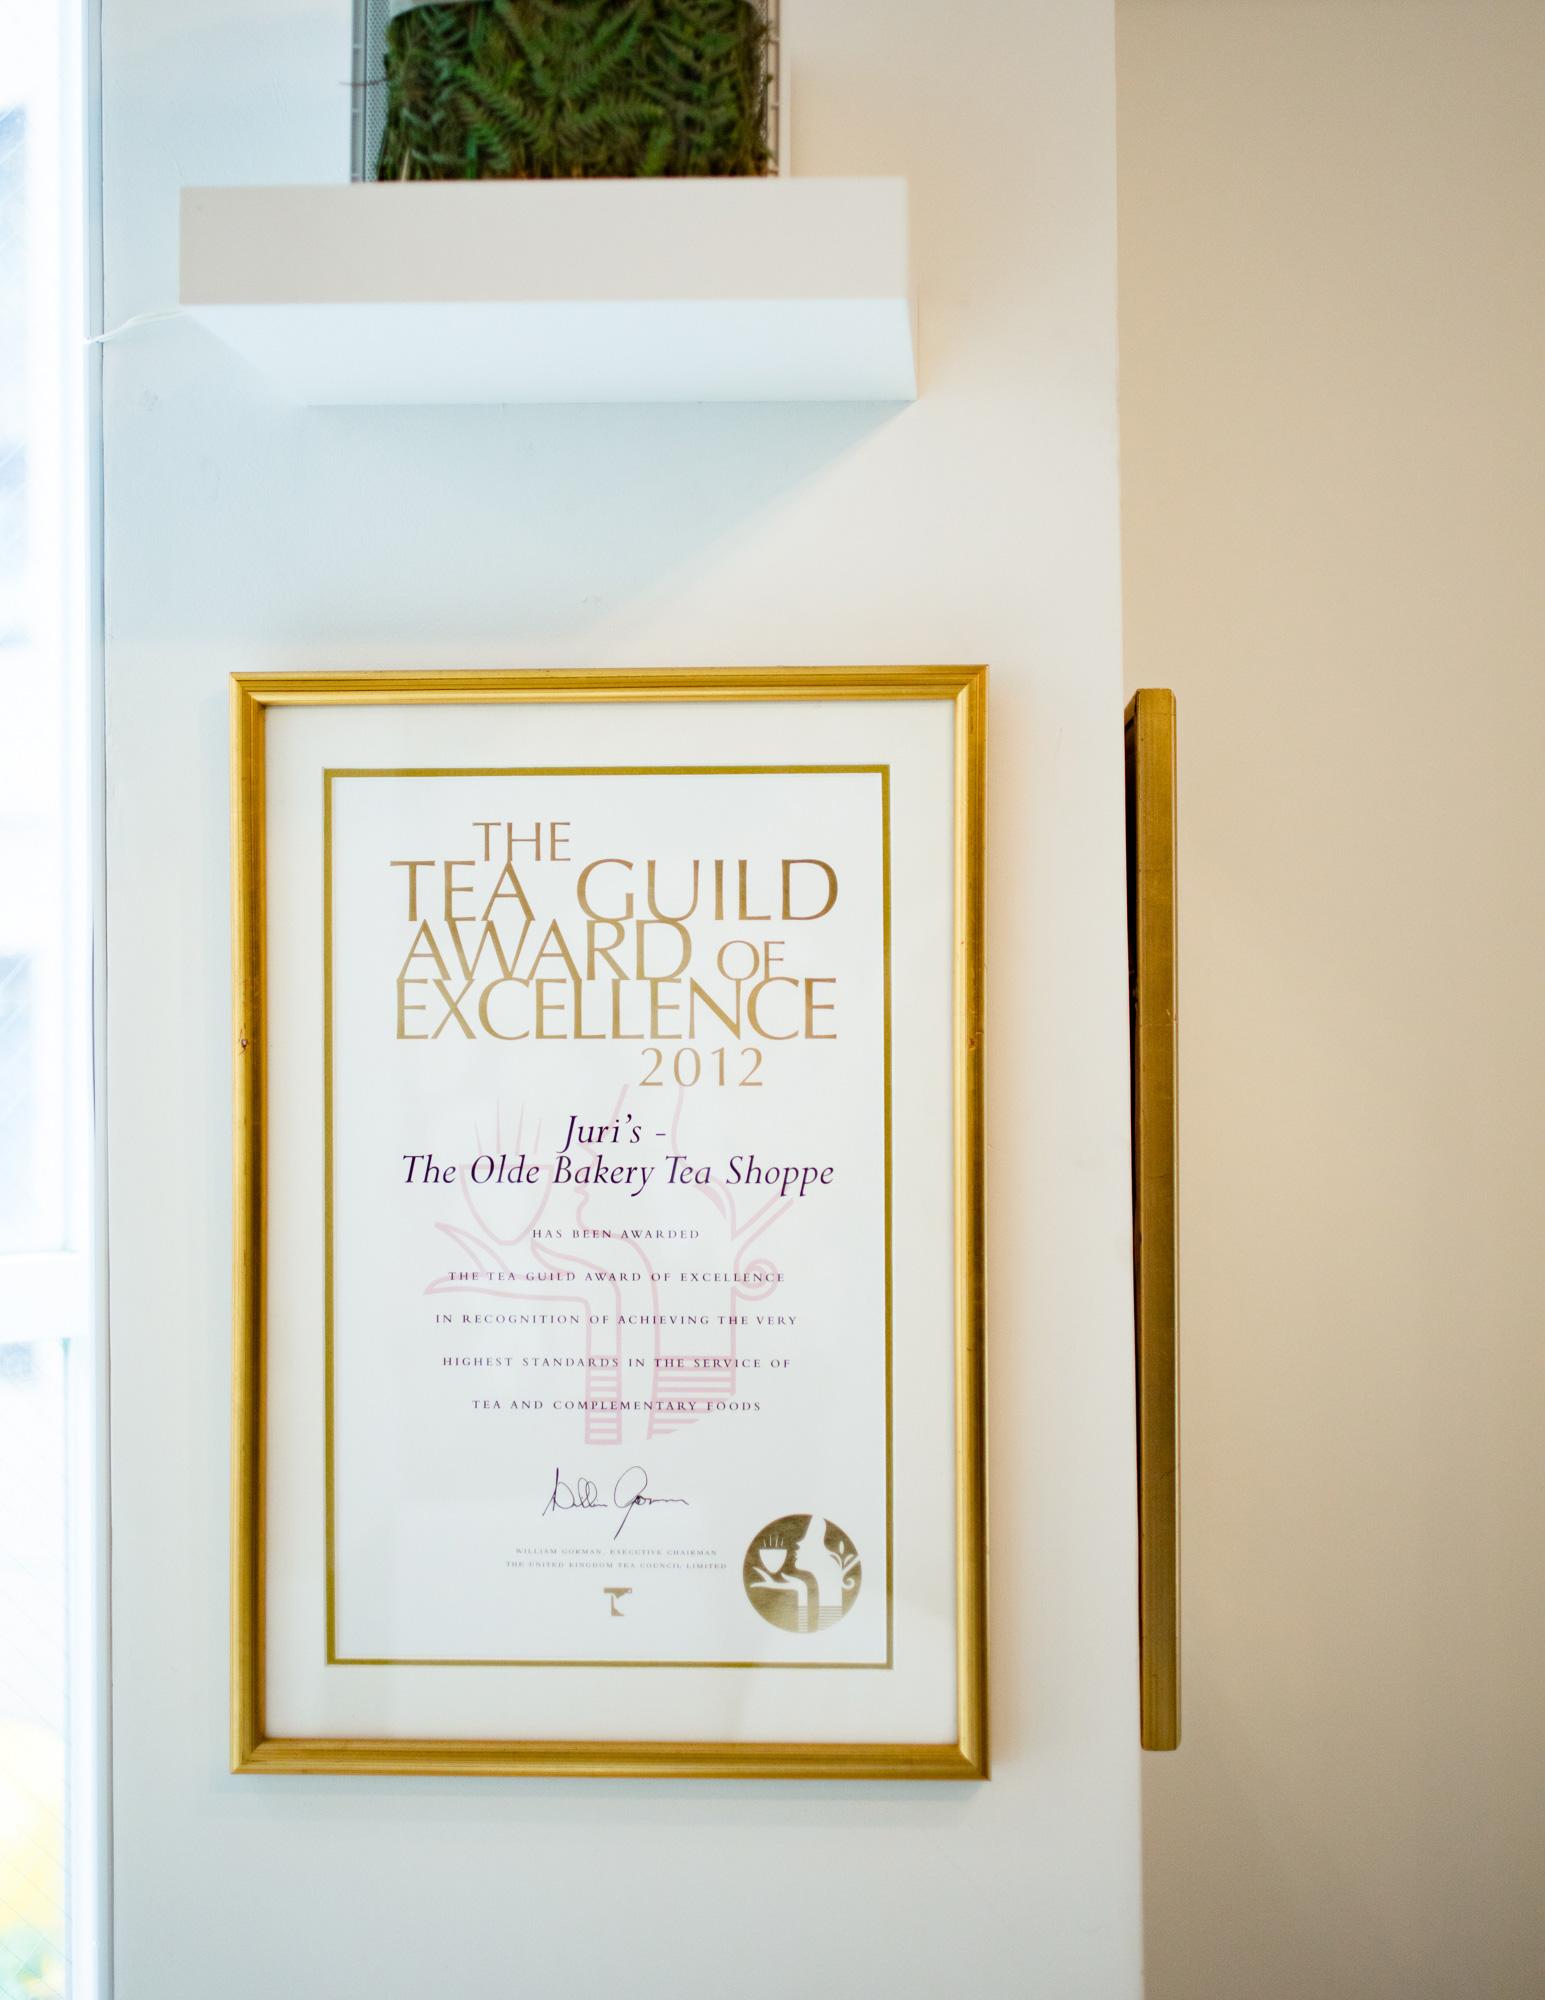 コッツウォルズにあった〈ジュリス ティールーム〉は英国の紅茶振興団体ティー・ギルド協会によって、2008年「TOP TEA PLACE」賞、2009年以降は毎年「THE TEA GUILD AWARD OF EXCELLENCE」を受賞していた。